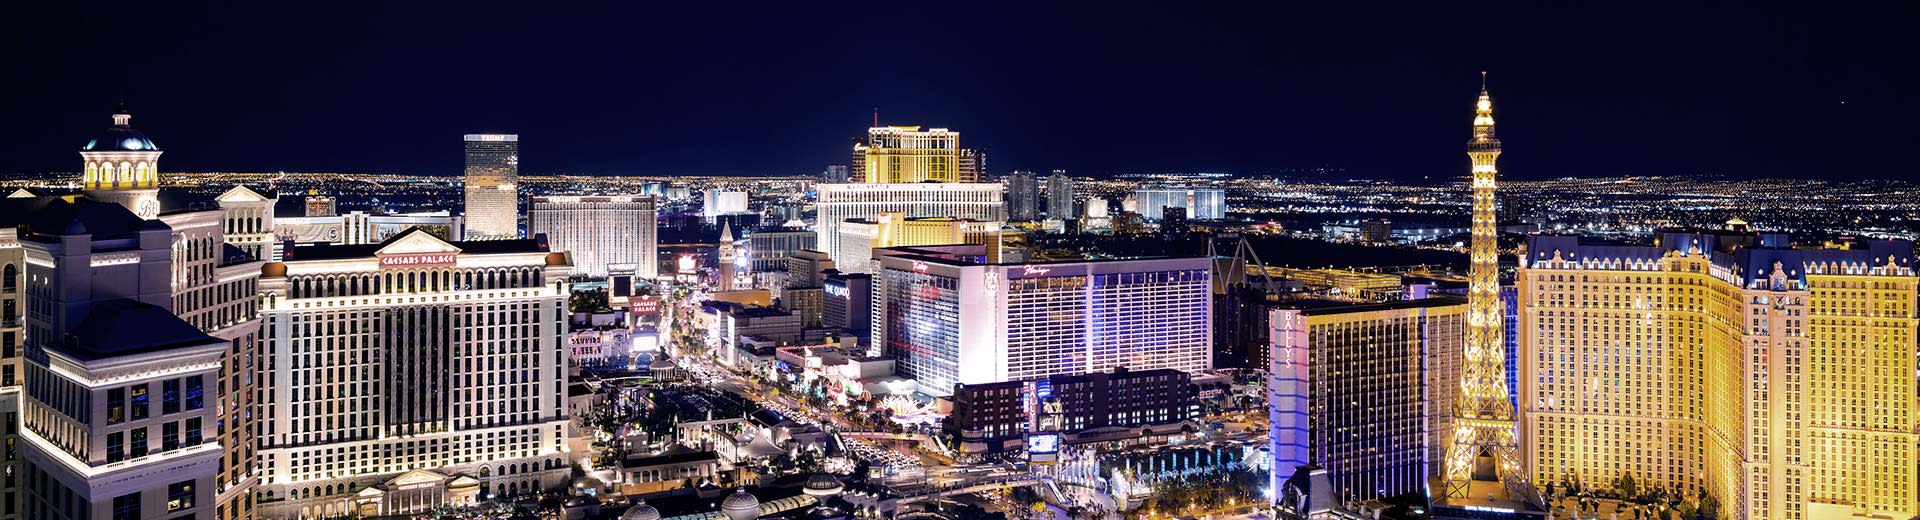 La famosa franja de Las Vegas se iluminó por la noche, con casinos y calles de remolque llenos de autos.